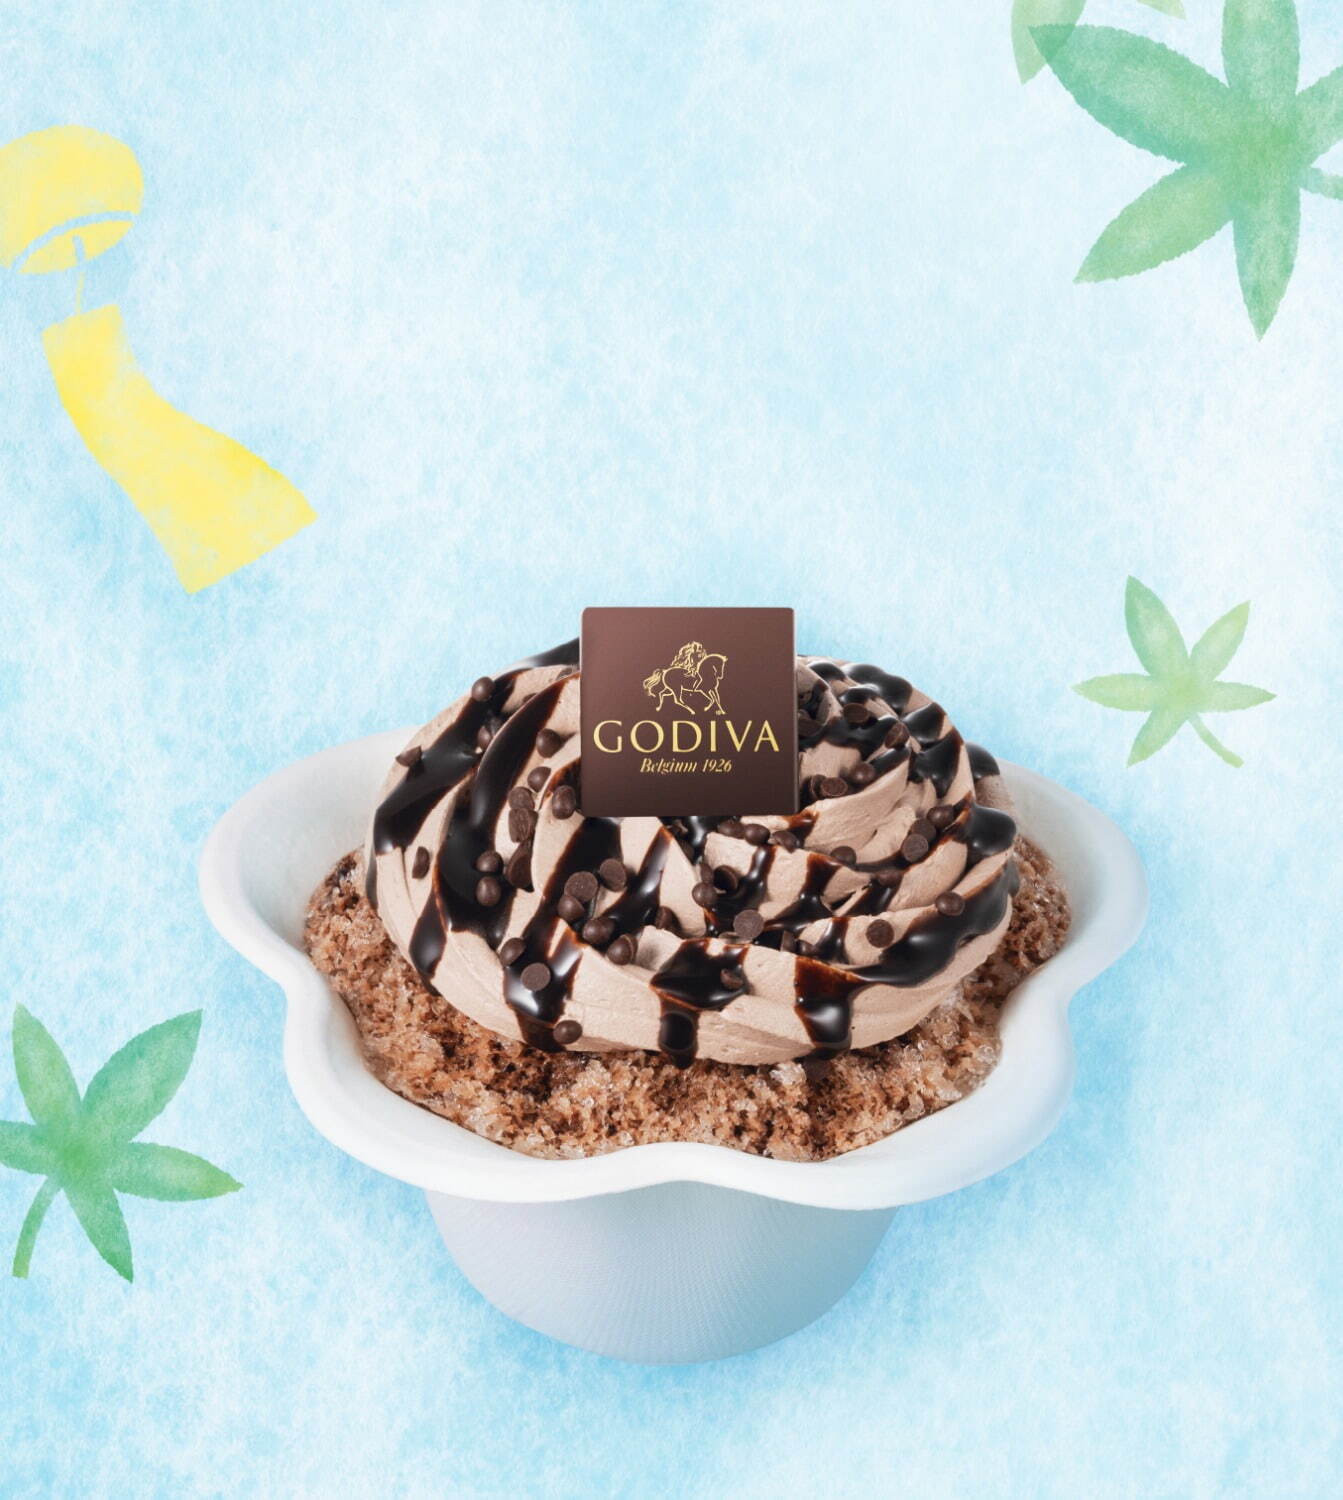 「ゴディバのチョコレートかき氷」900円